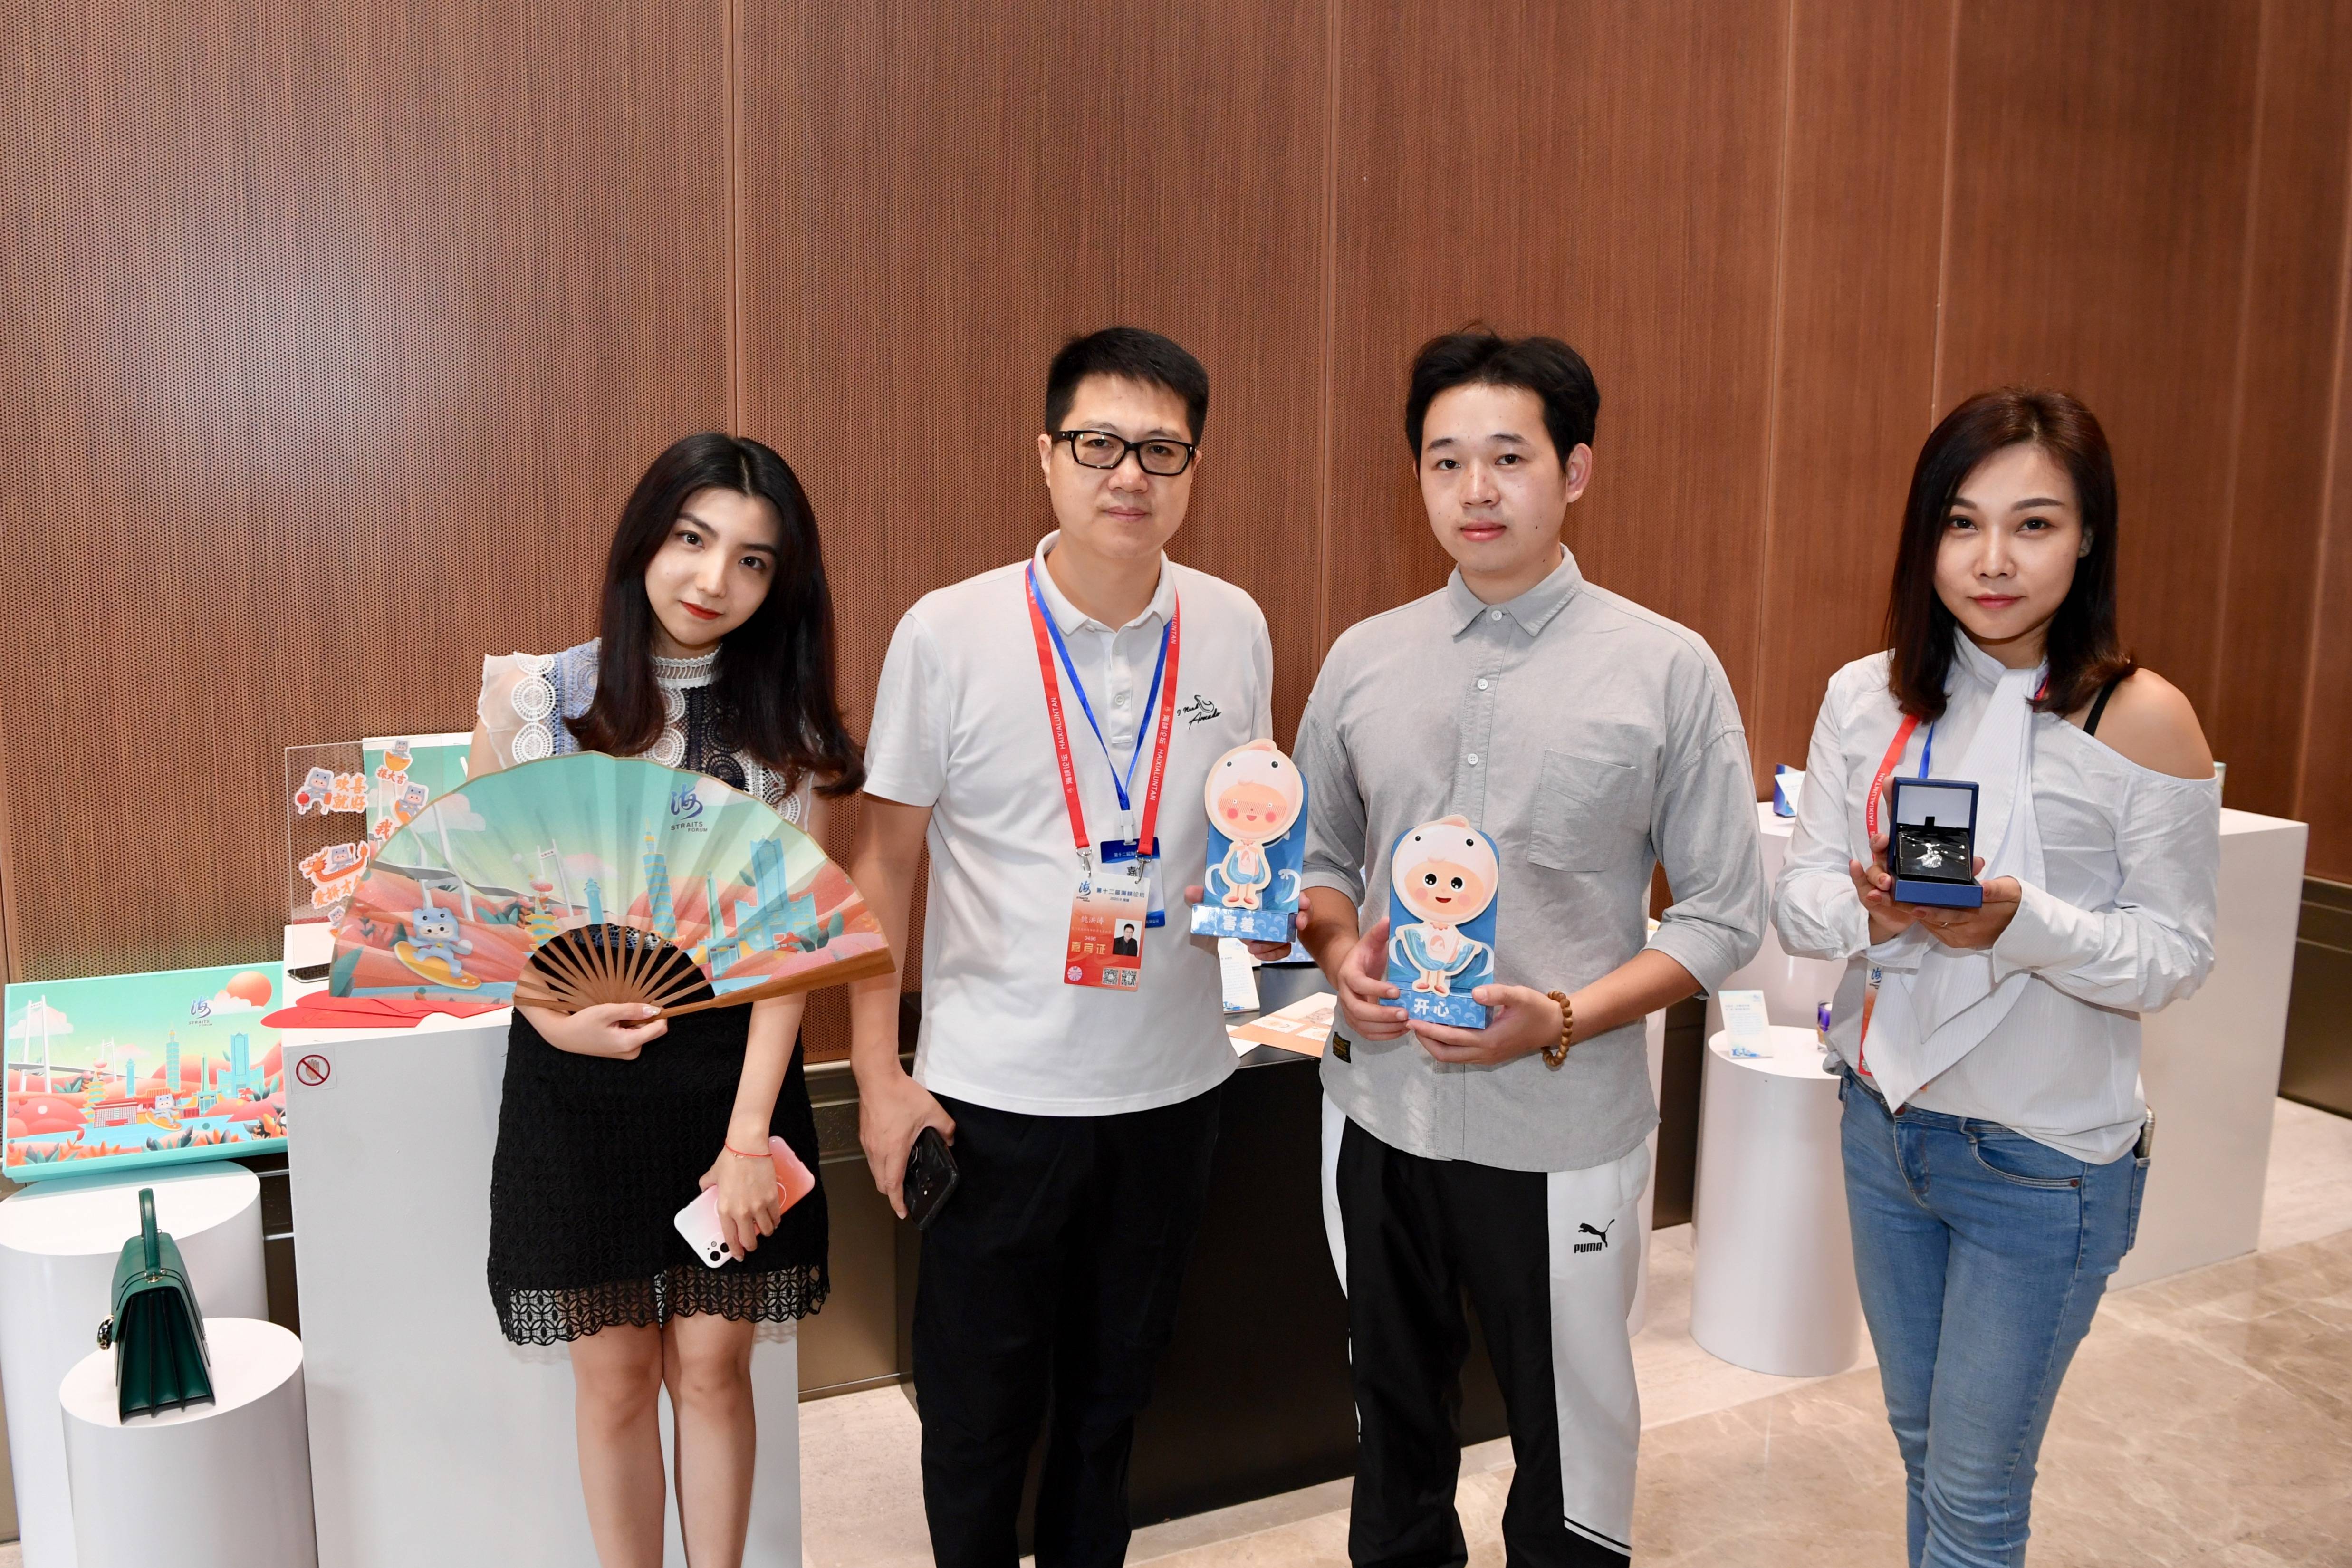 9月19日,两岸青年文创设计师展示获奖的文创设计作品.